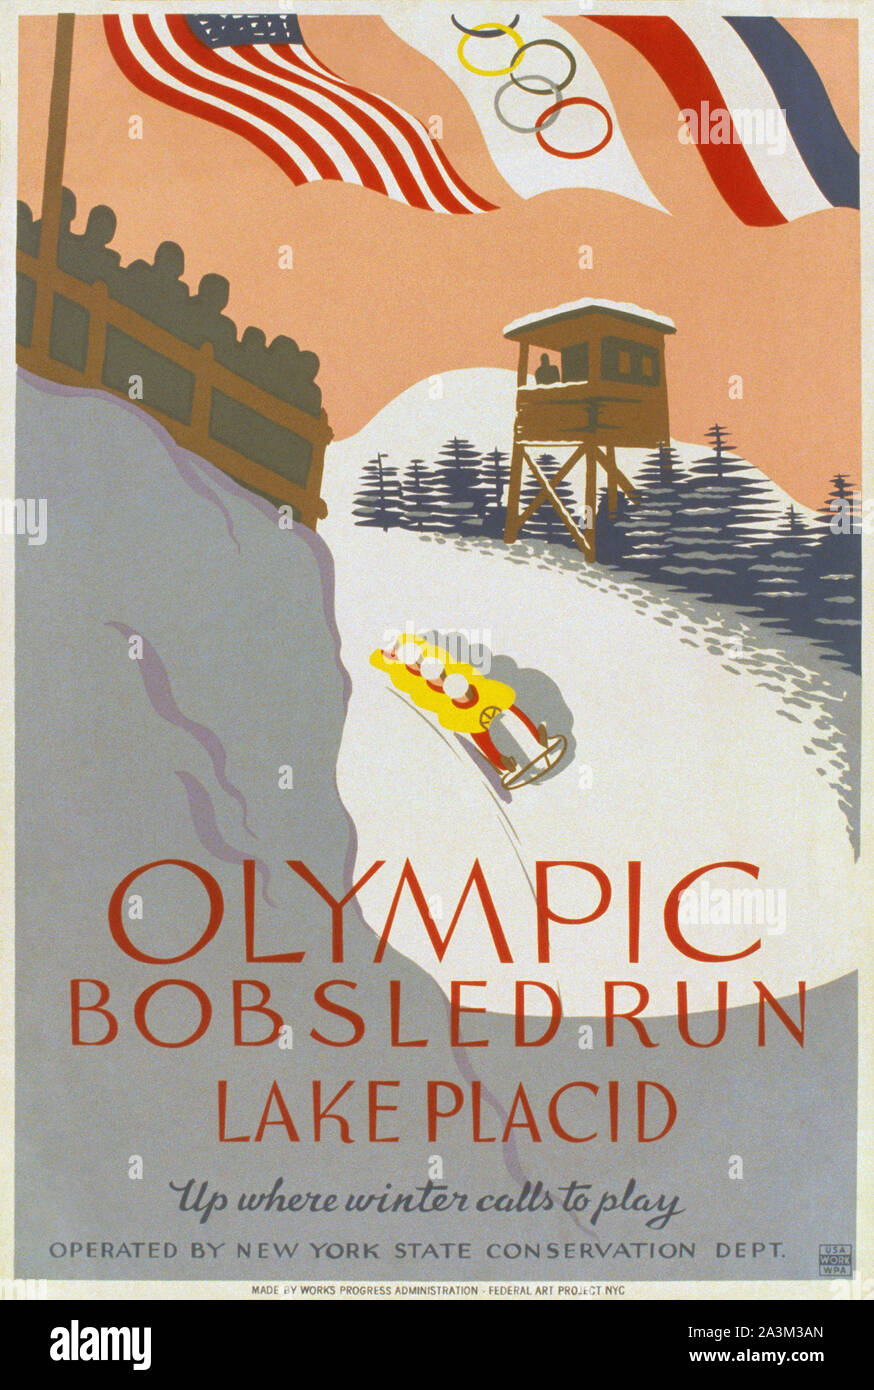 Lake Placid trineo Run - juegos olímpicos de invierno - Vintage poster Foto de stock